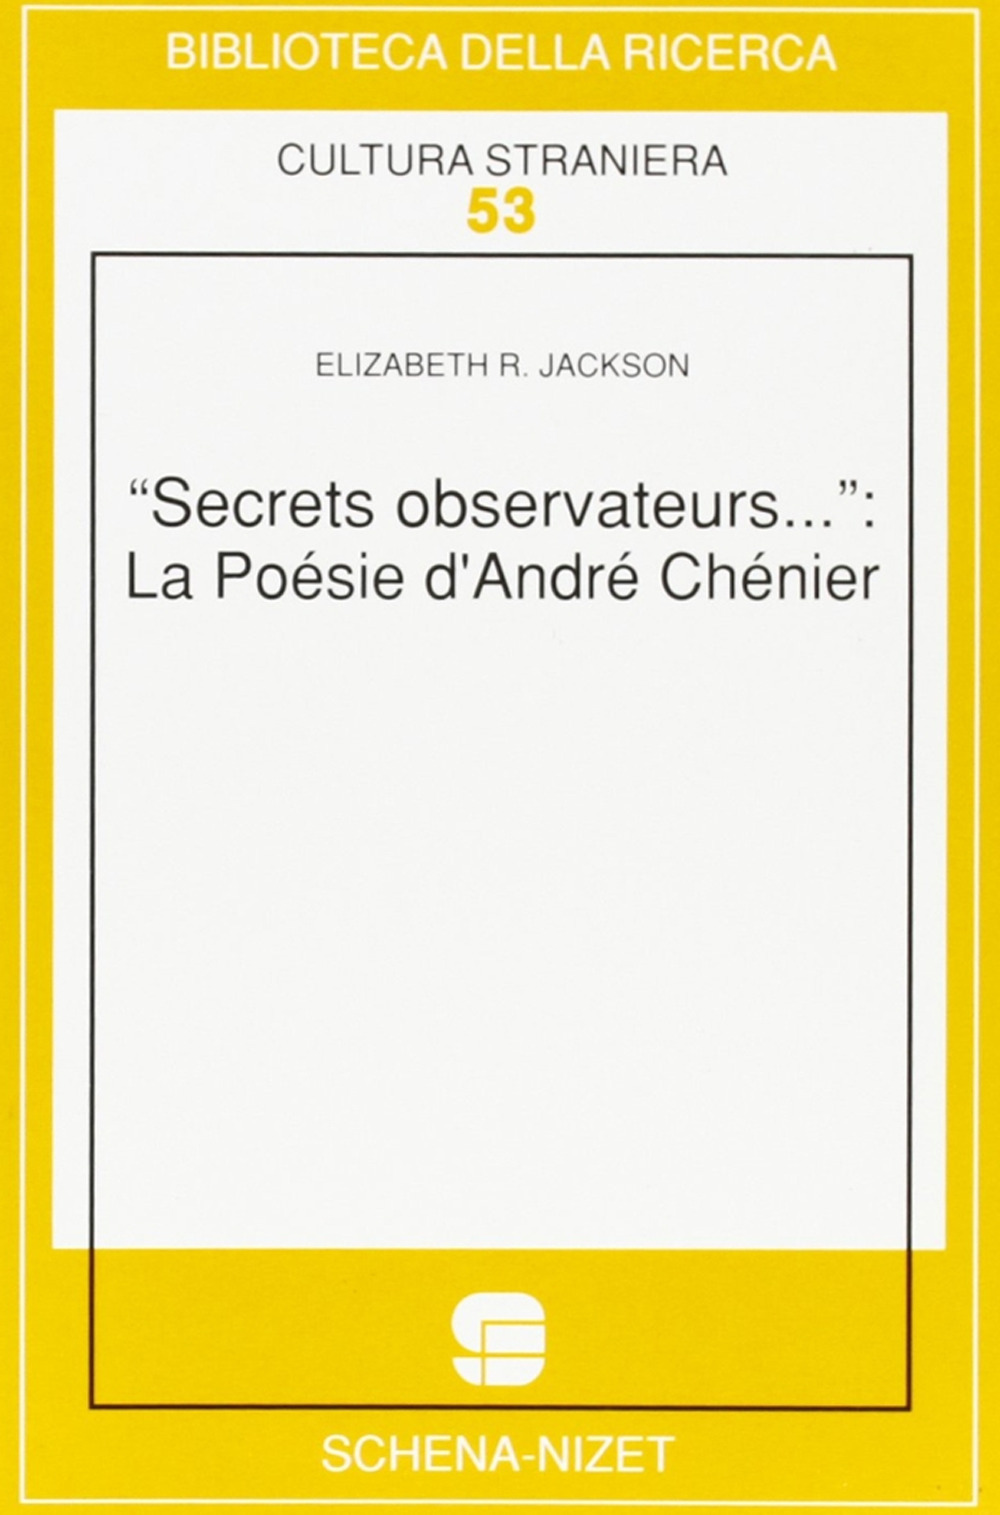 Secrets observateurs... La poesie d'André Chenier